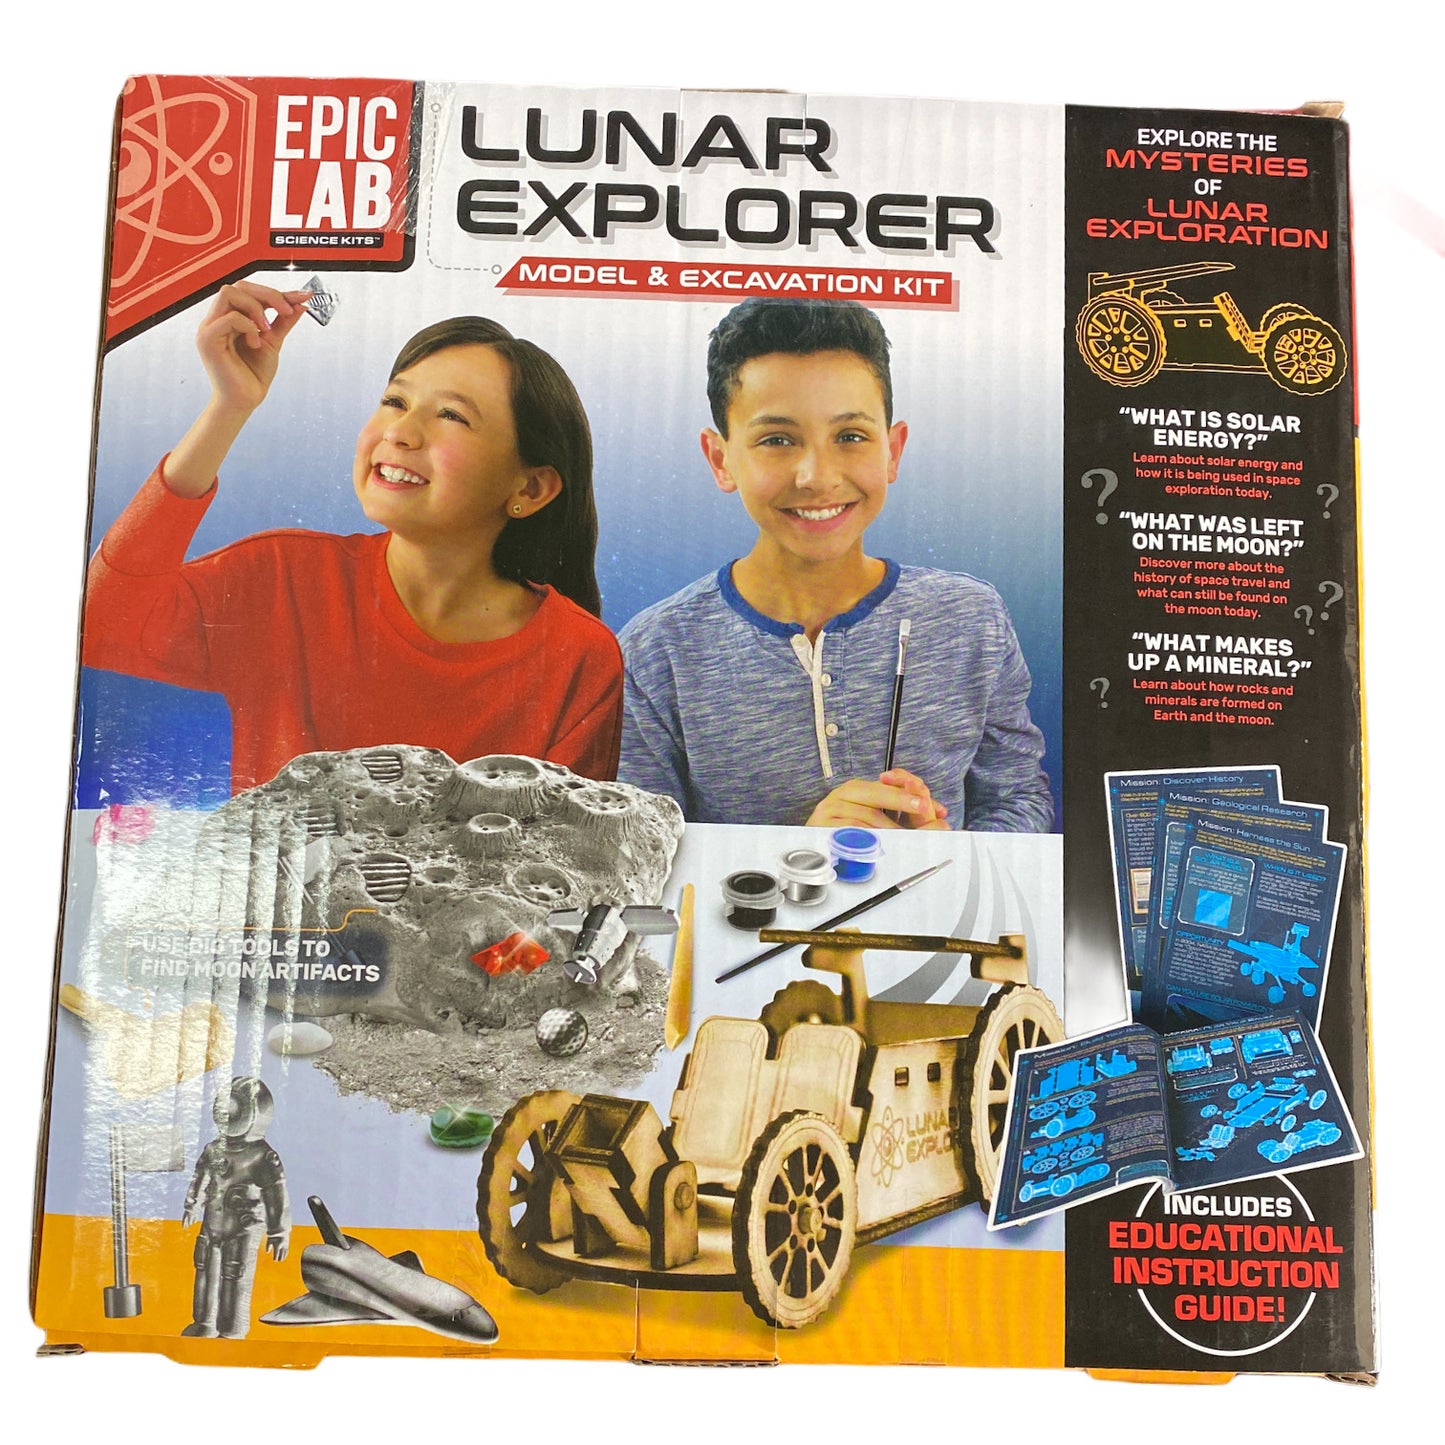 Epic Lab Lunar Explorer Dig Model & Excavation Kit STEAM